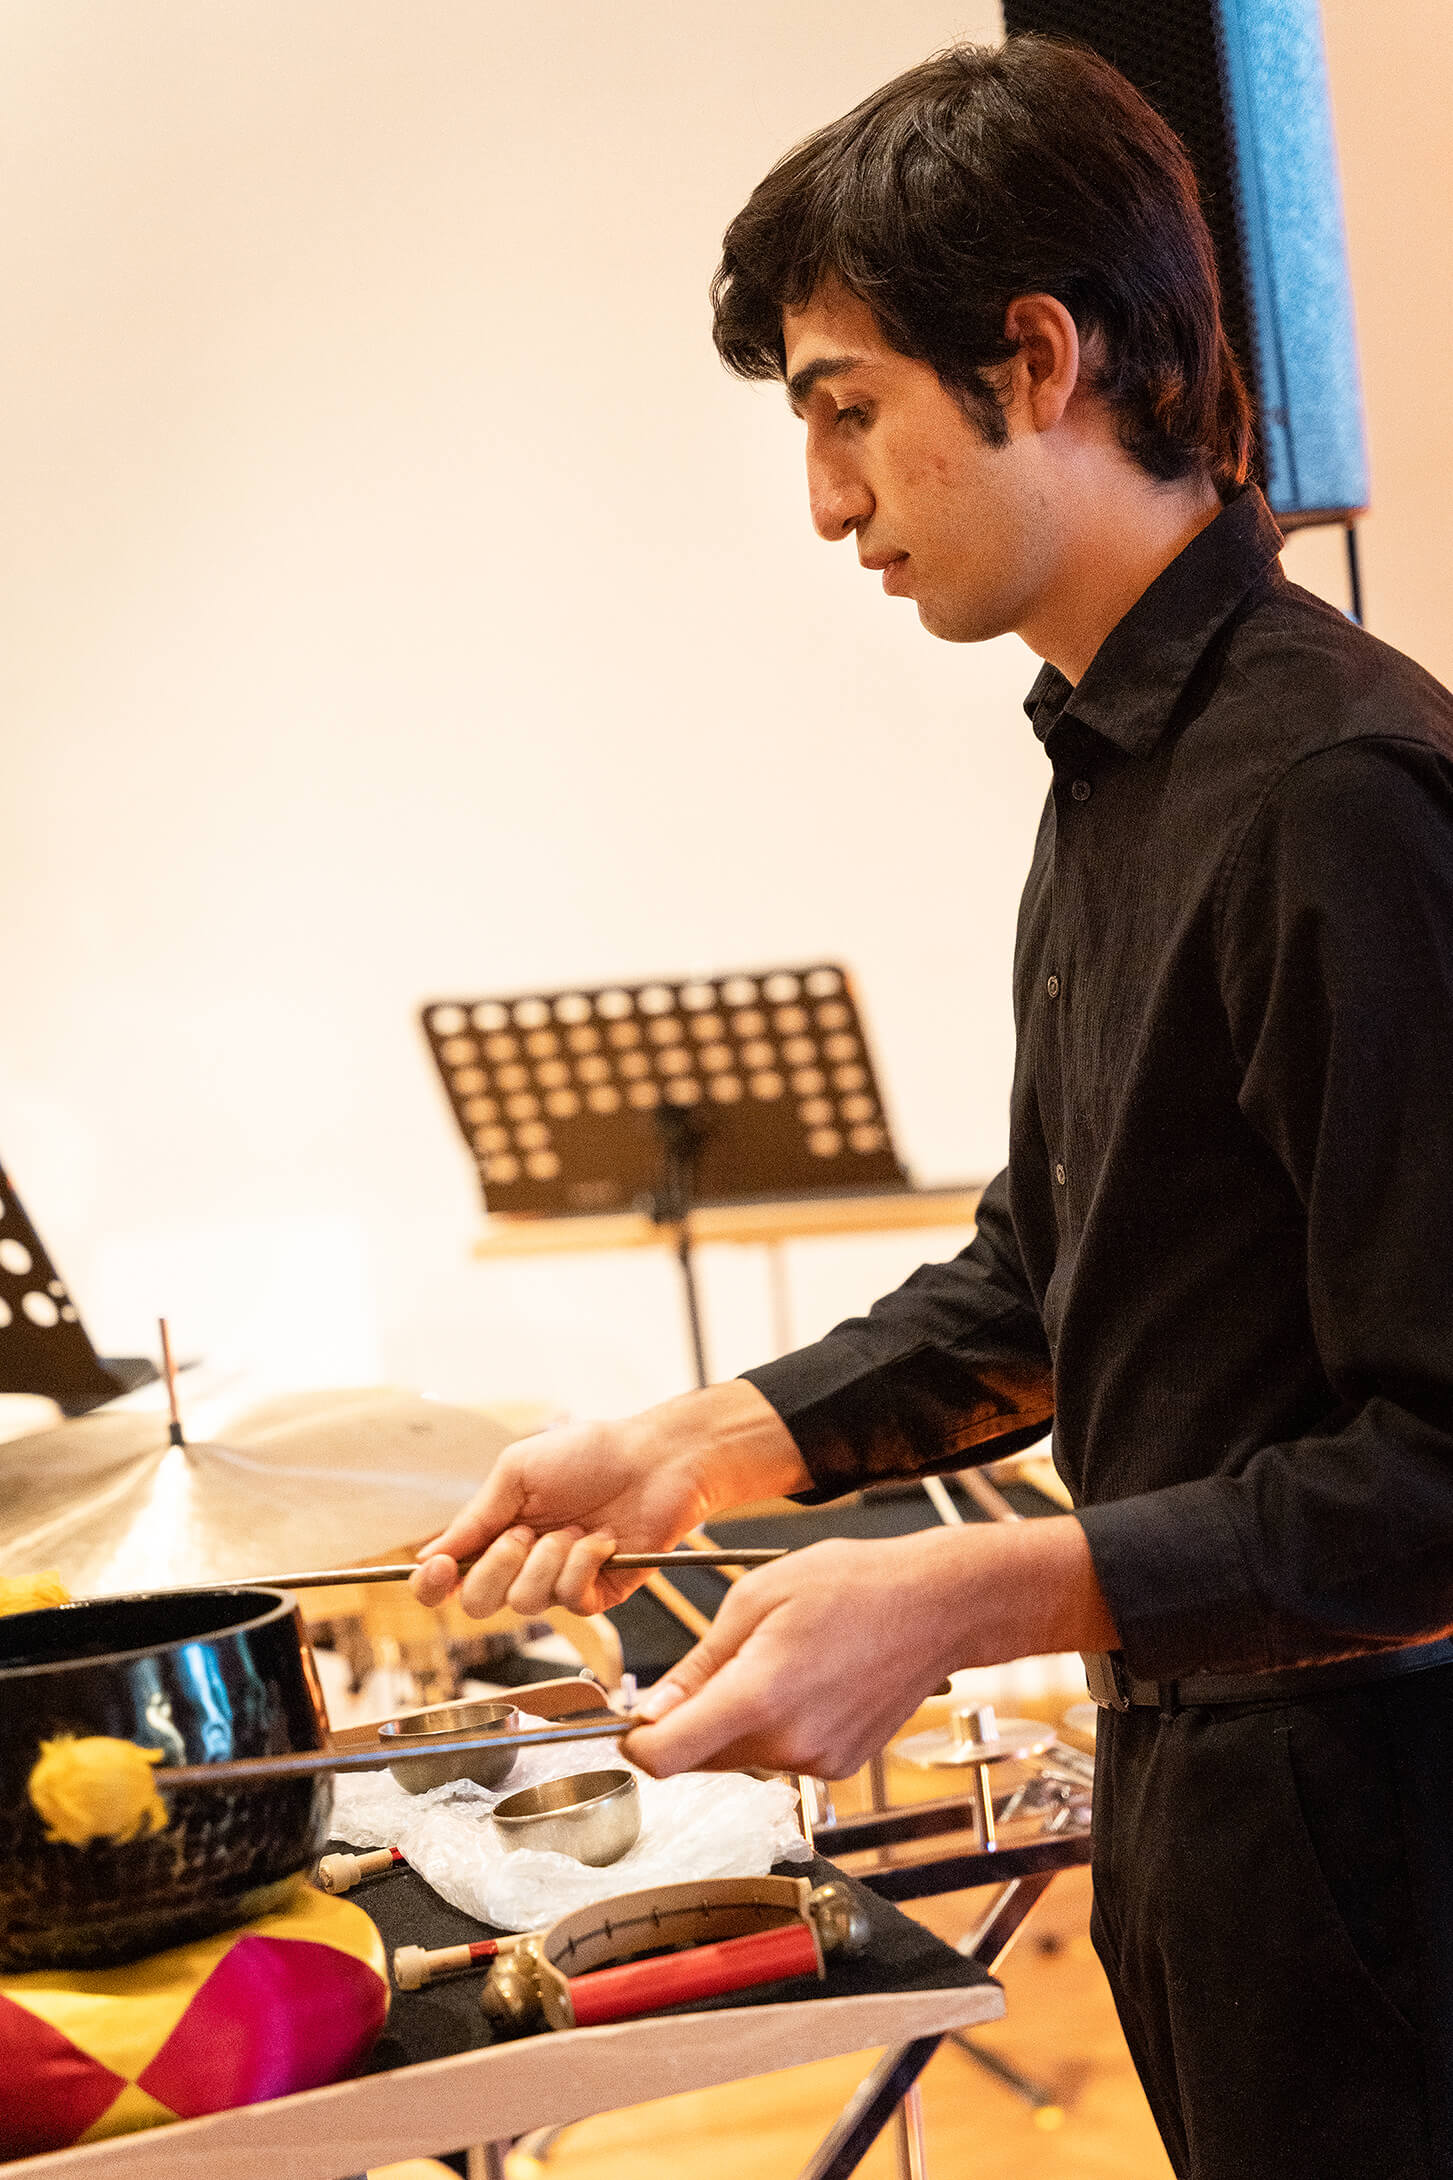 Das Bild zeigt einen jungen Percussionist beim spielen einer Klangschale